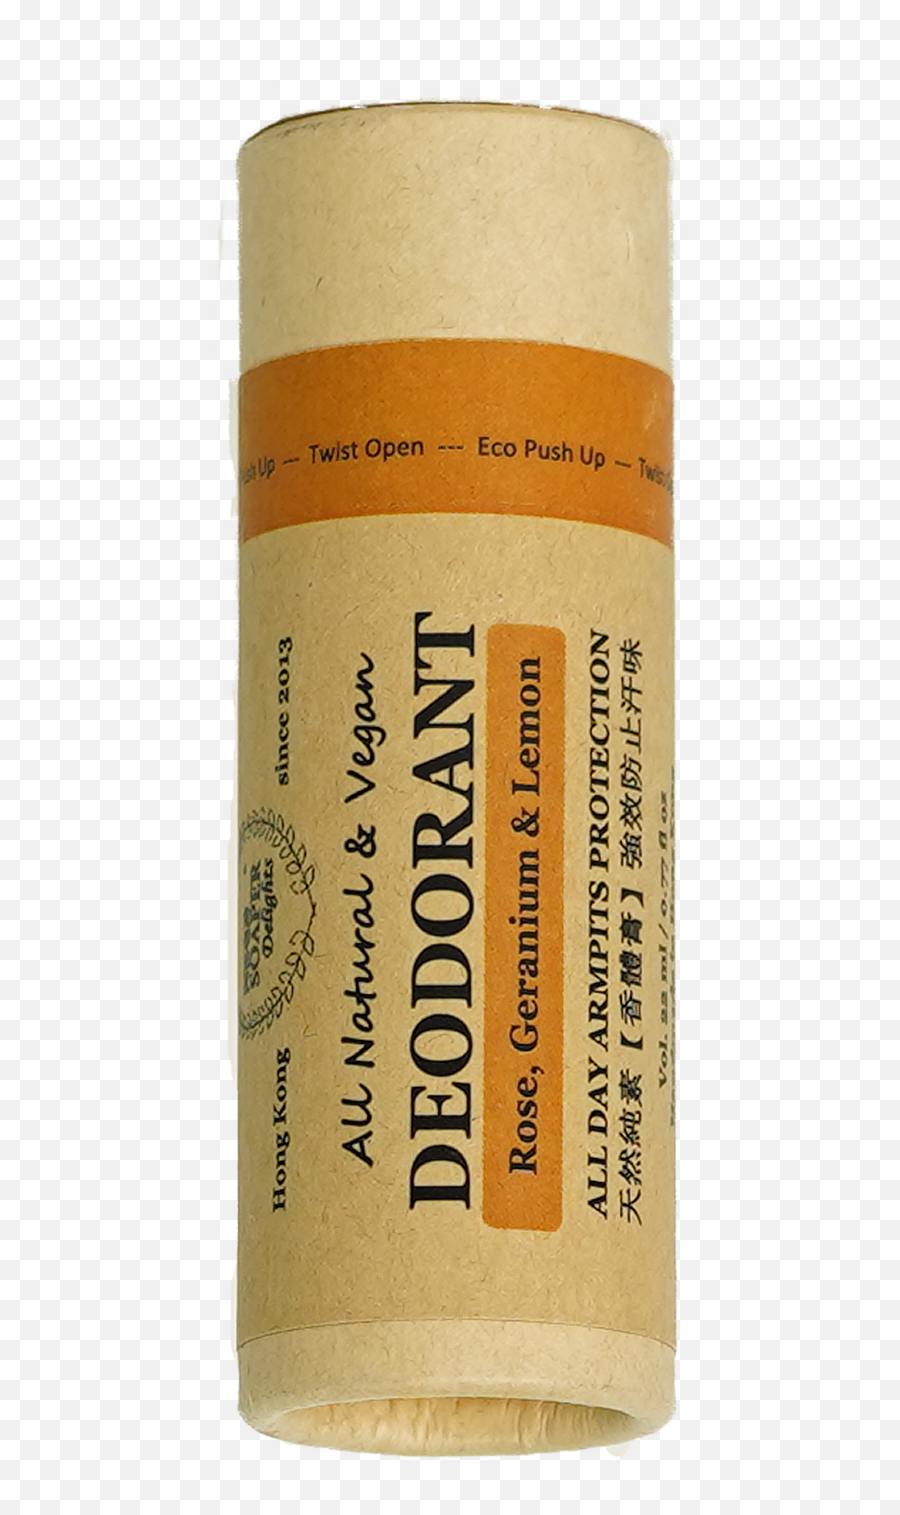 Natural U0026 Vegan Deodorant - Lip Gloss Png,Stink Png